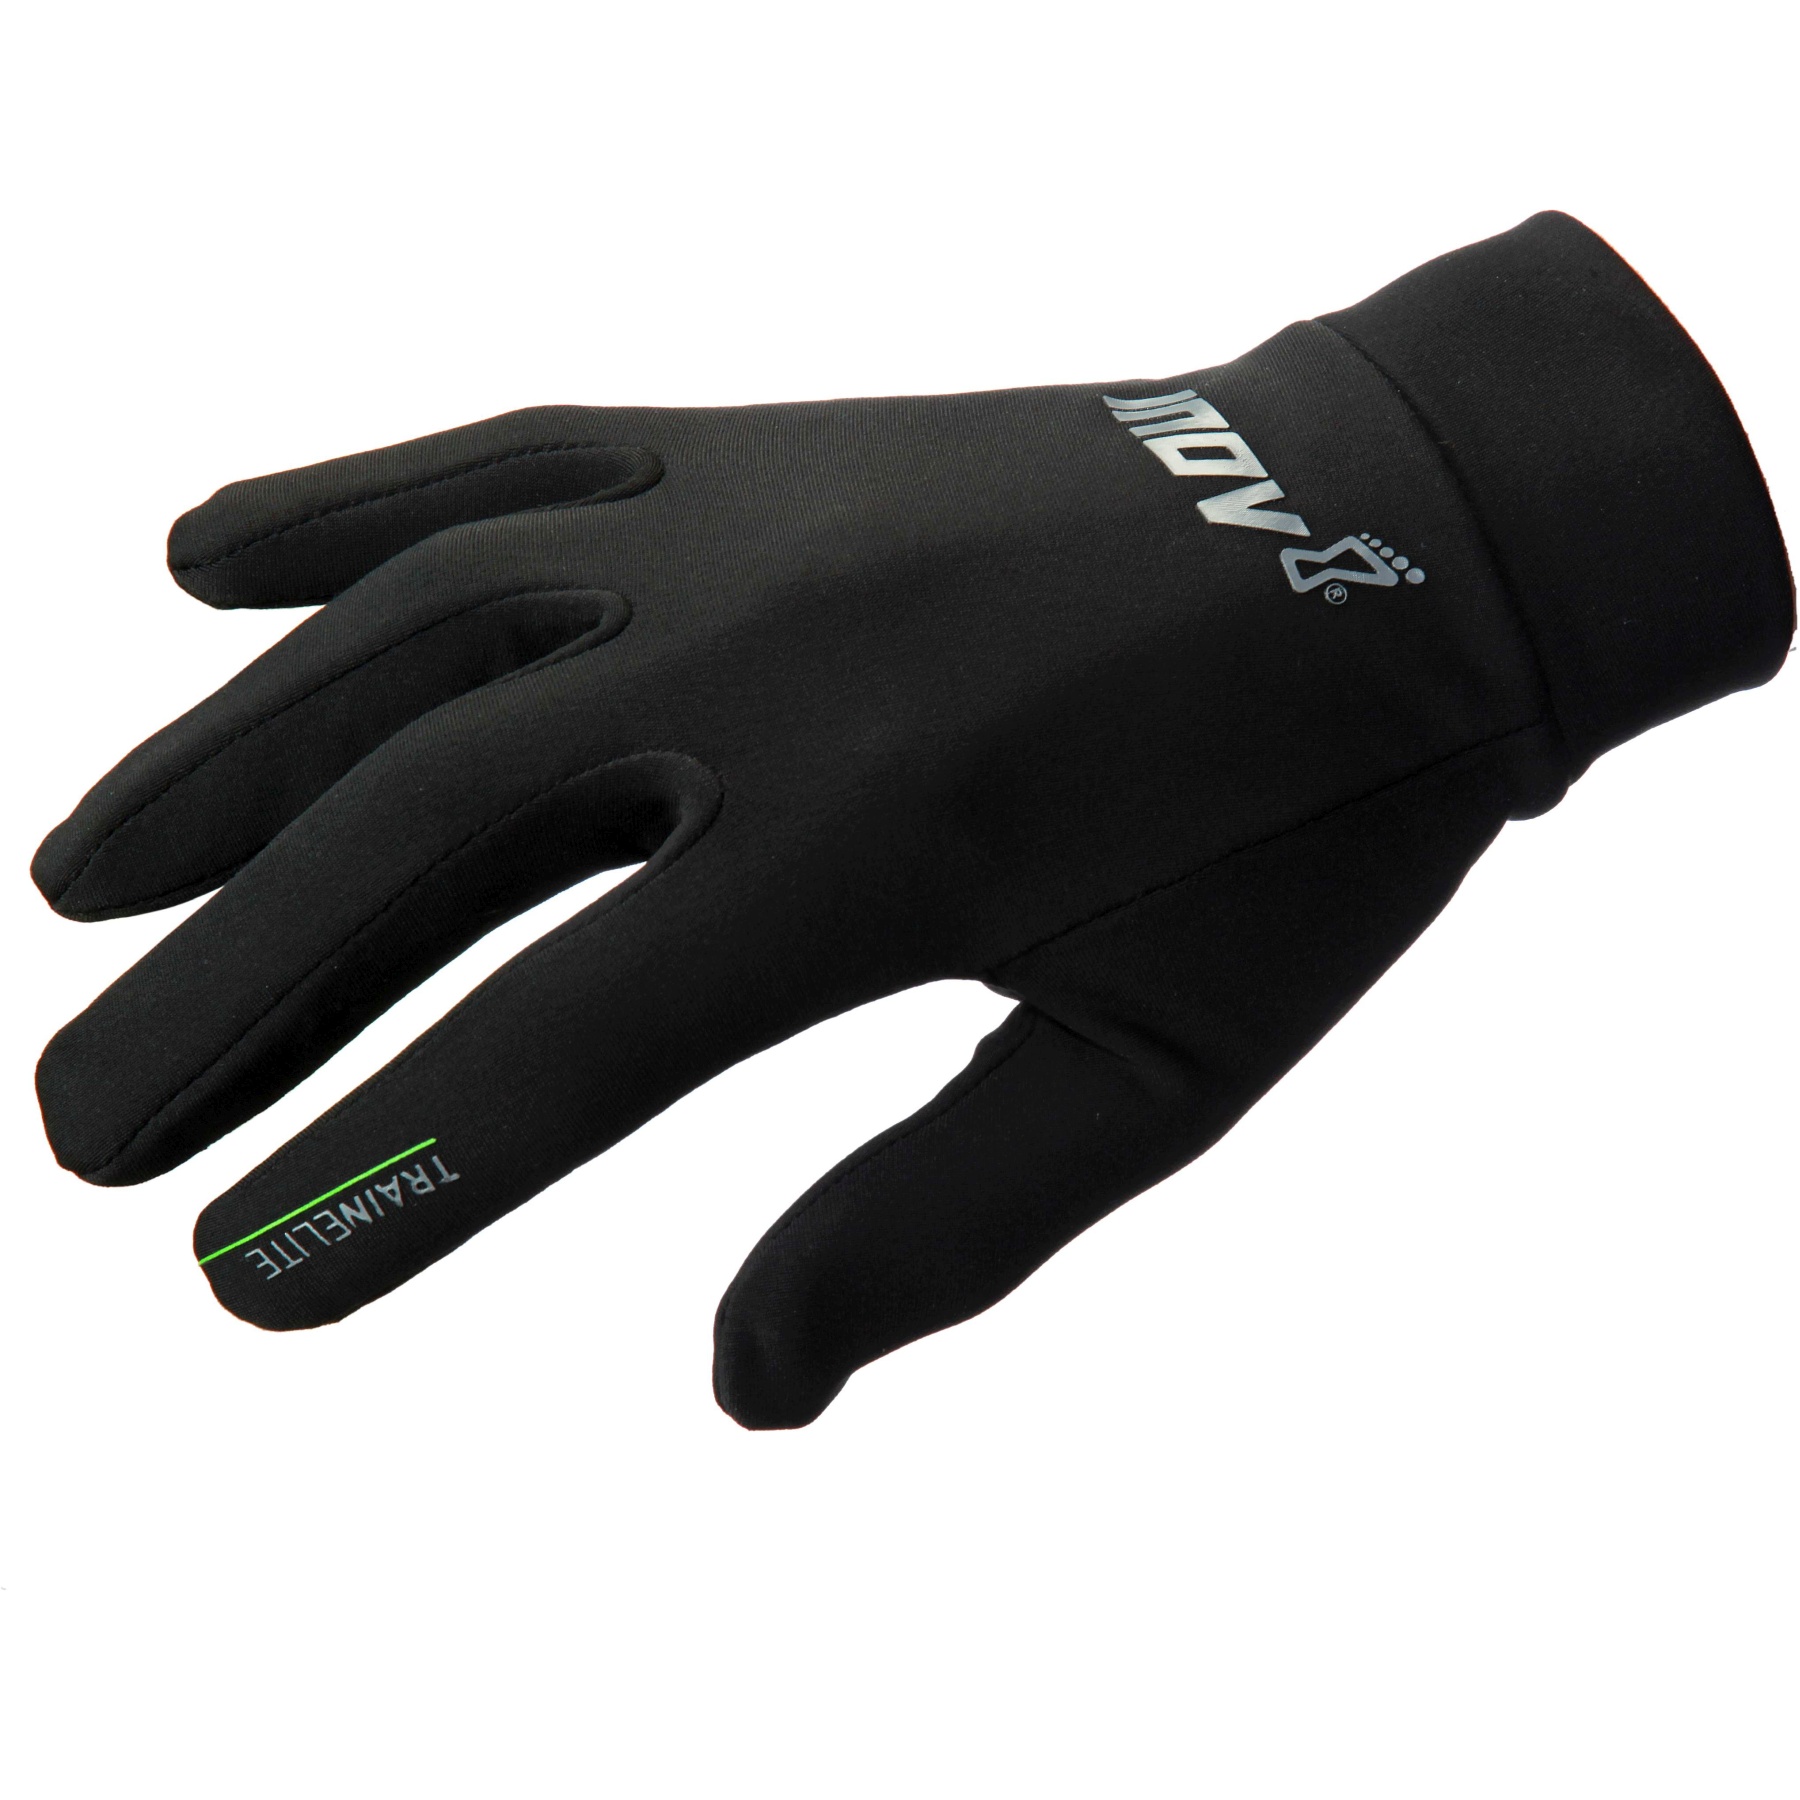 Produktbild von Inov-8 Train Elite Handschuhe - schwarz